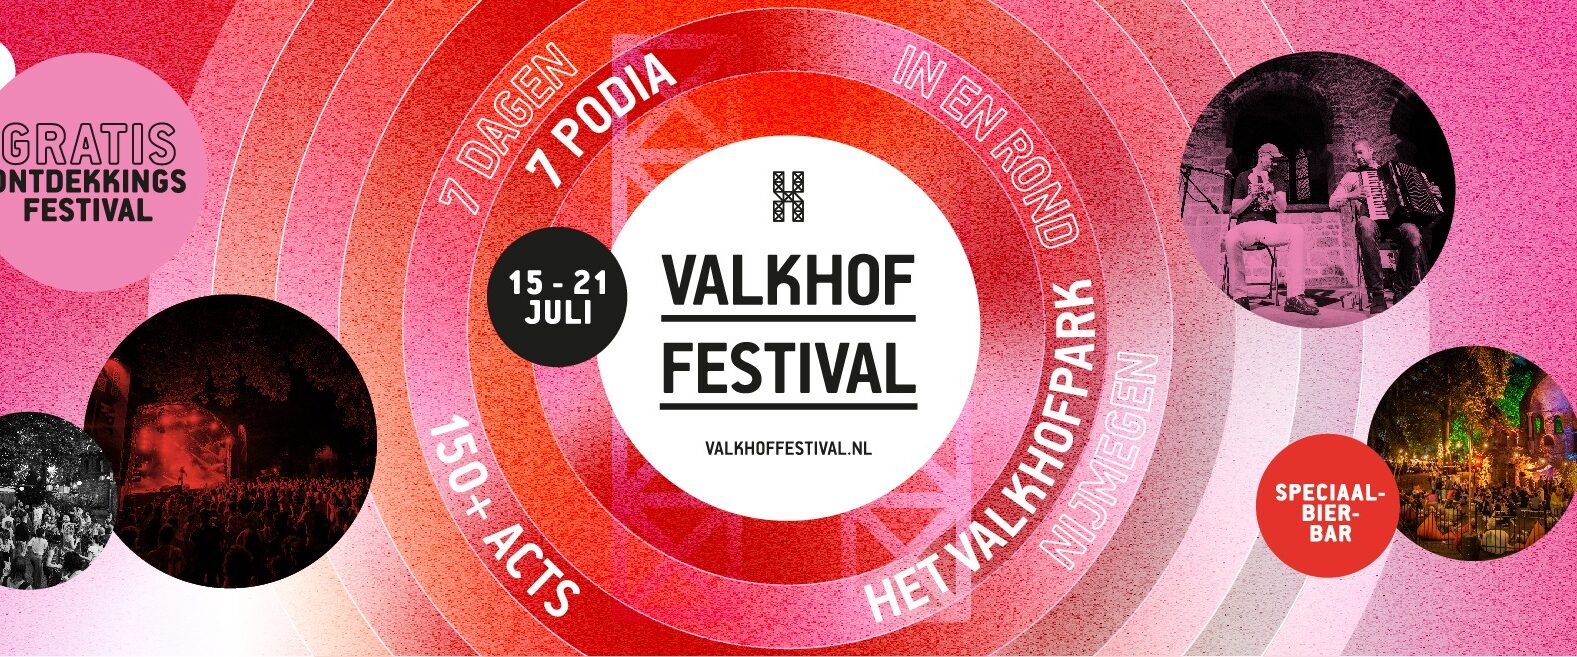 Valkhof Festival | Ronald Langestraat 1